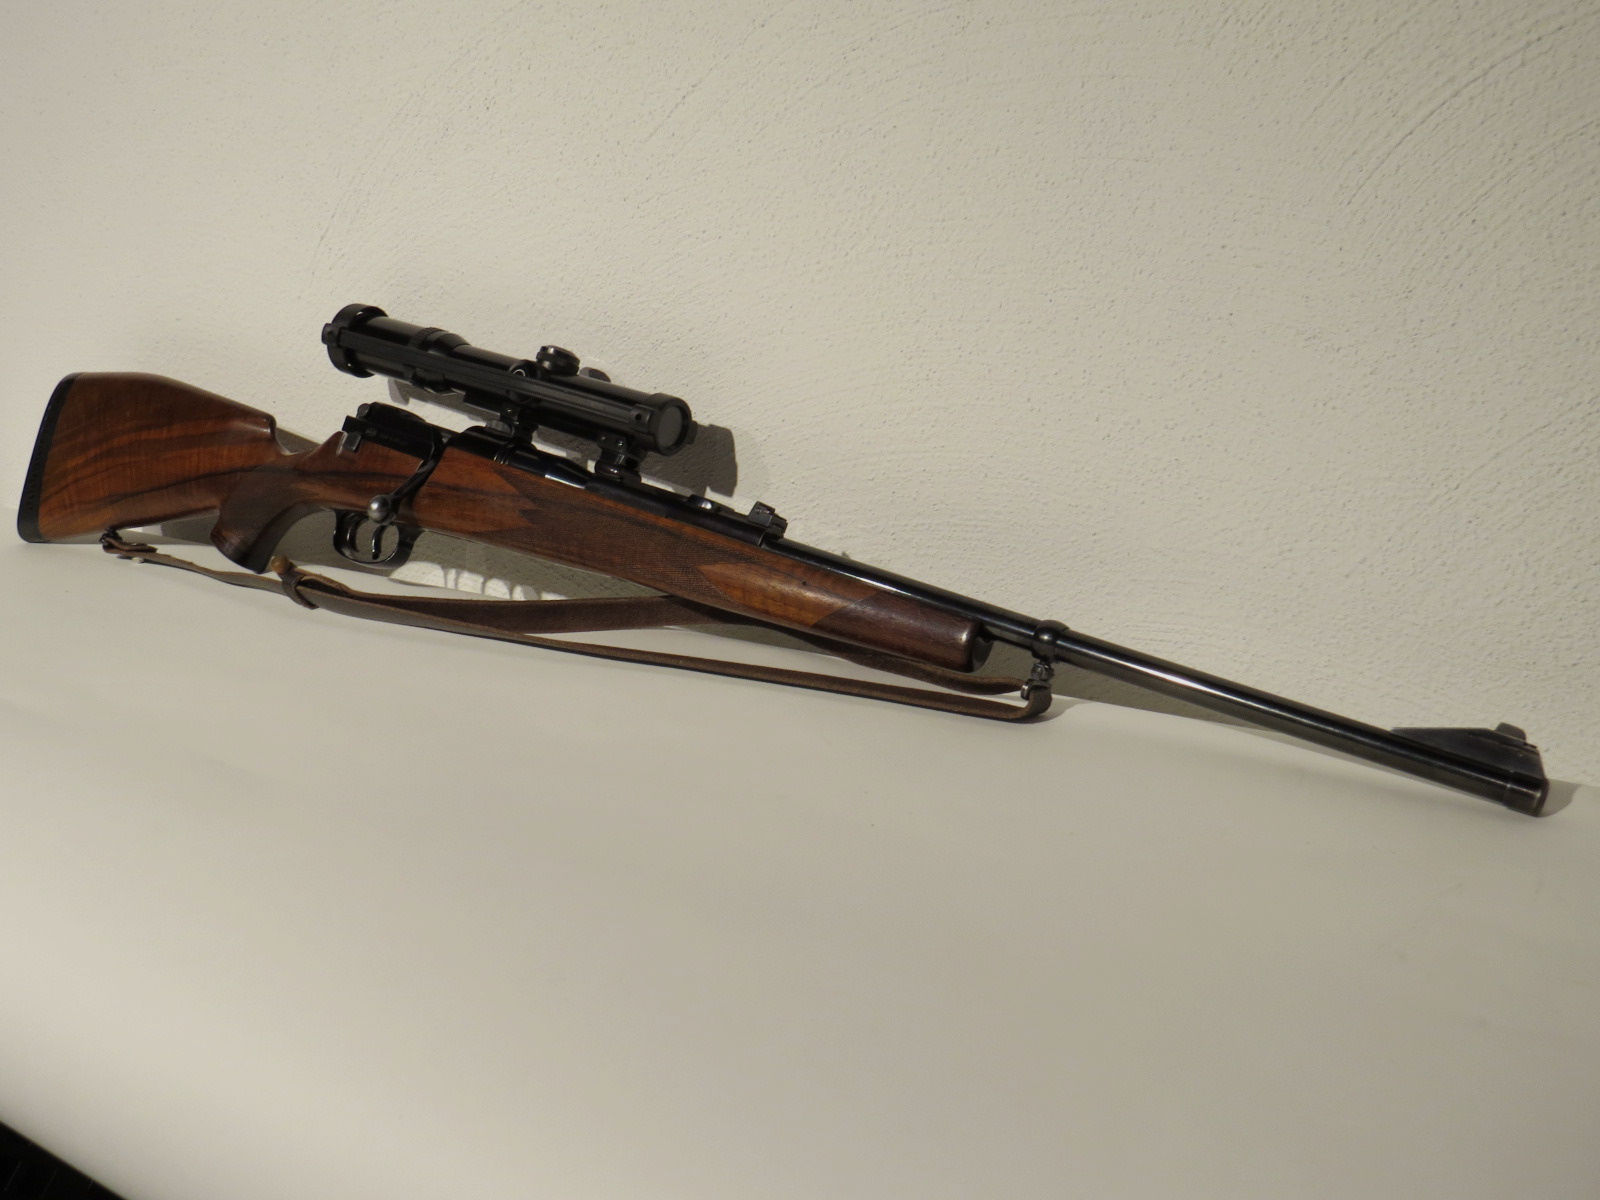 Mauser  Modell 66 - 7x64 - Schmidt Bender  1 1/4-4x20